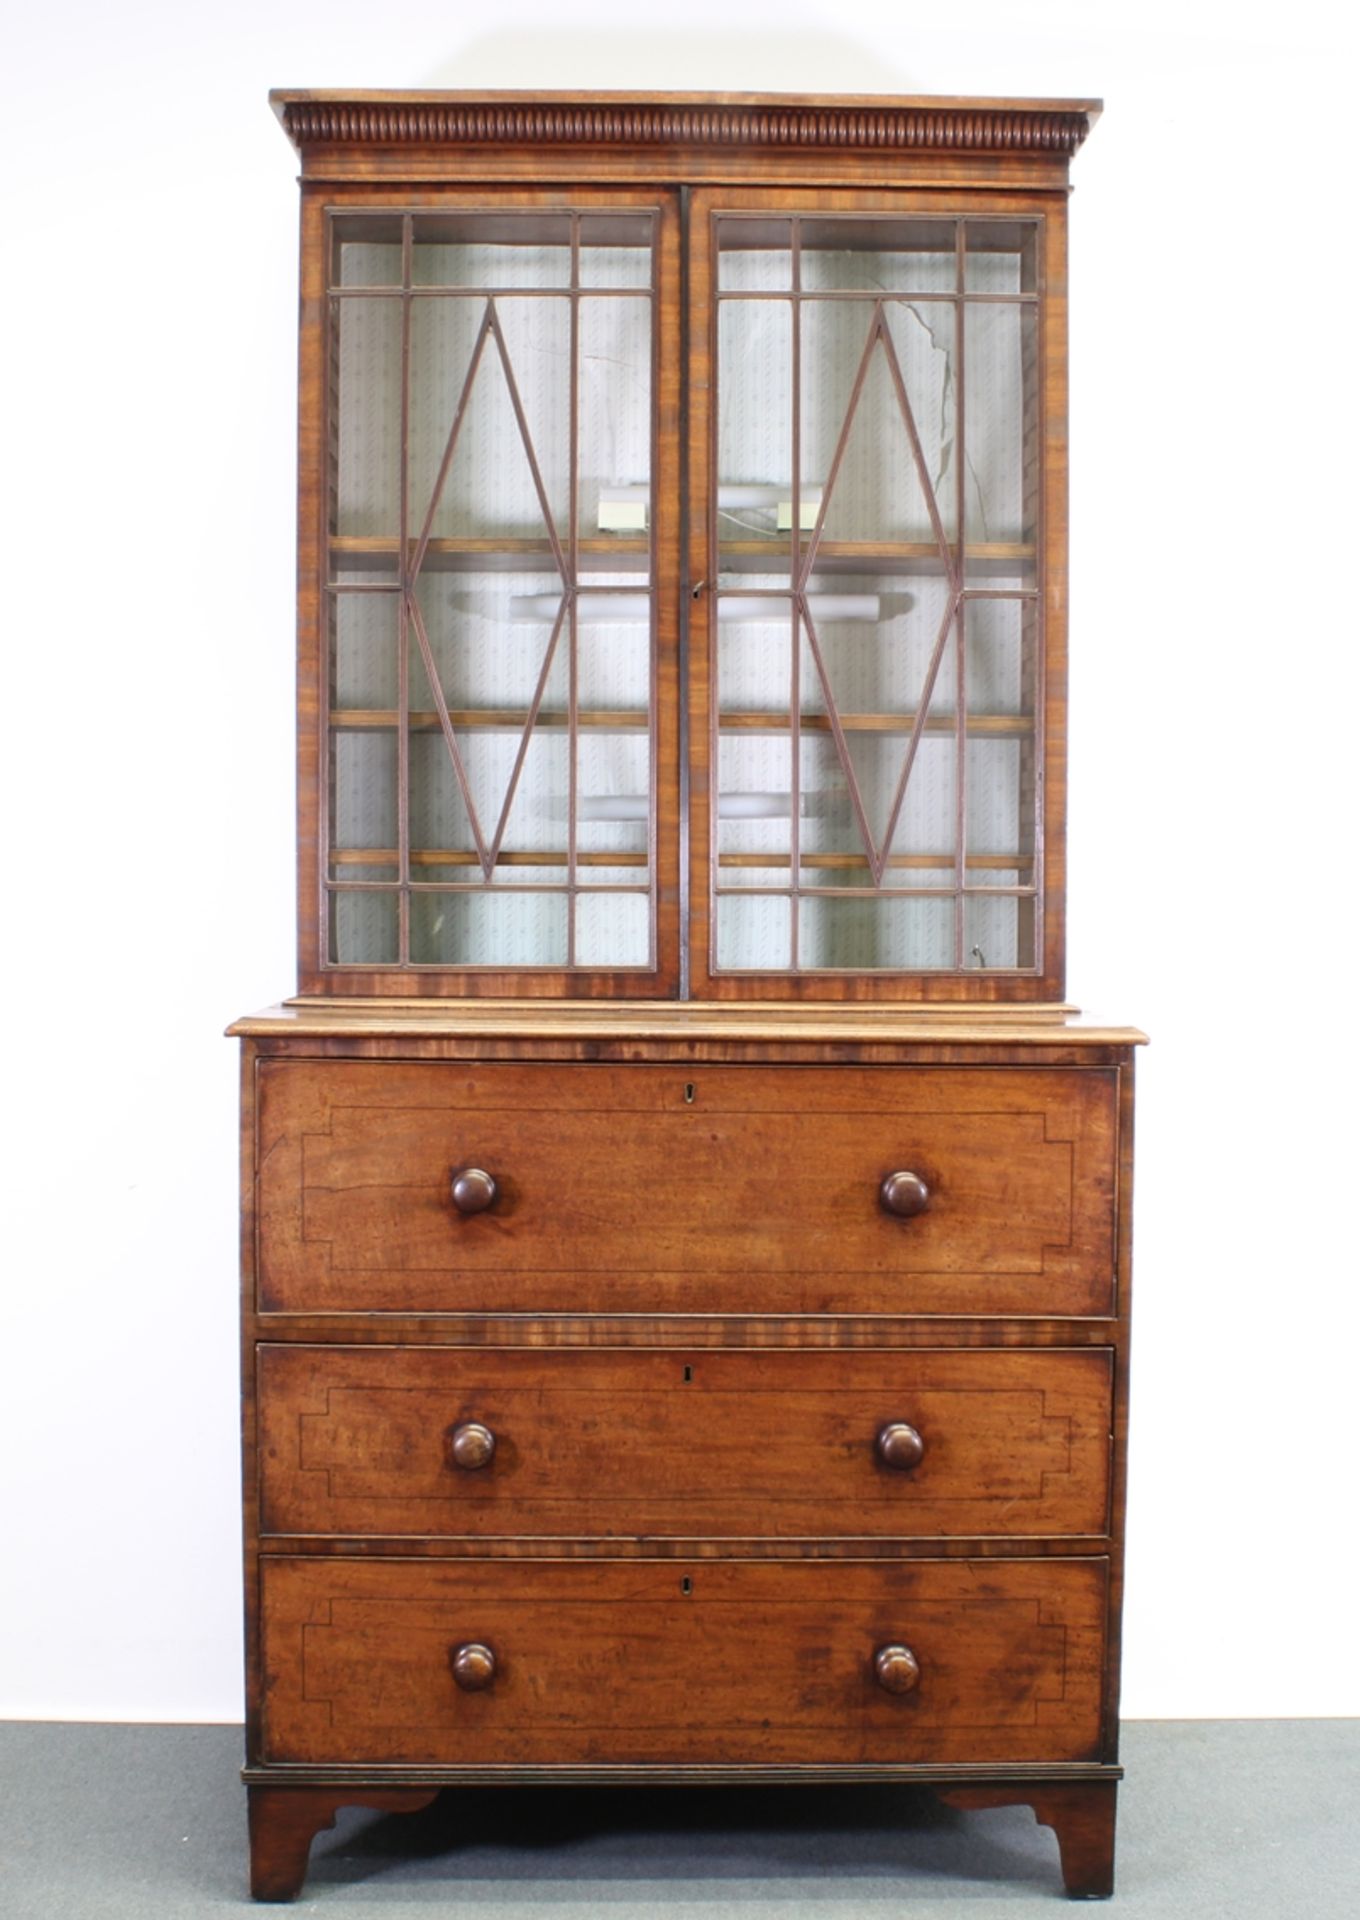 Aufsatz-Schreibkommode / "Secretaire Bookcase", England, frühes 19. Jh., Mahagoni, Unterteil mit dr - Bild 2 aus 3